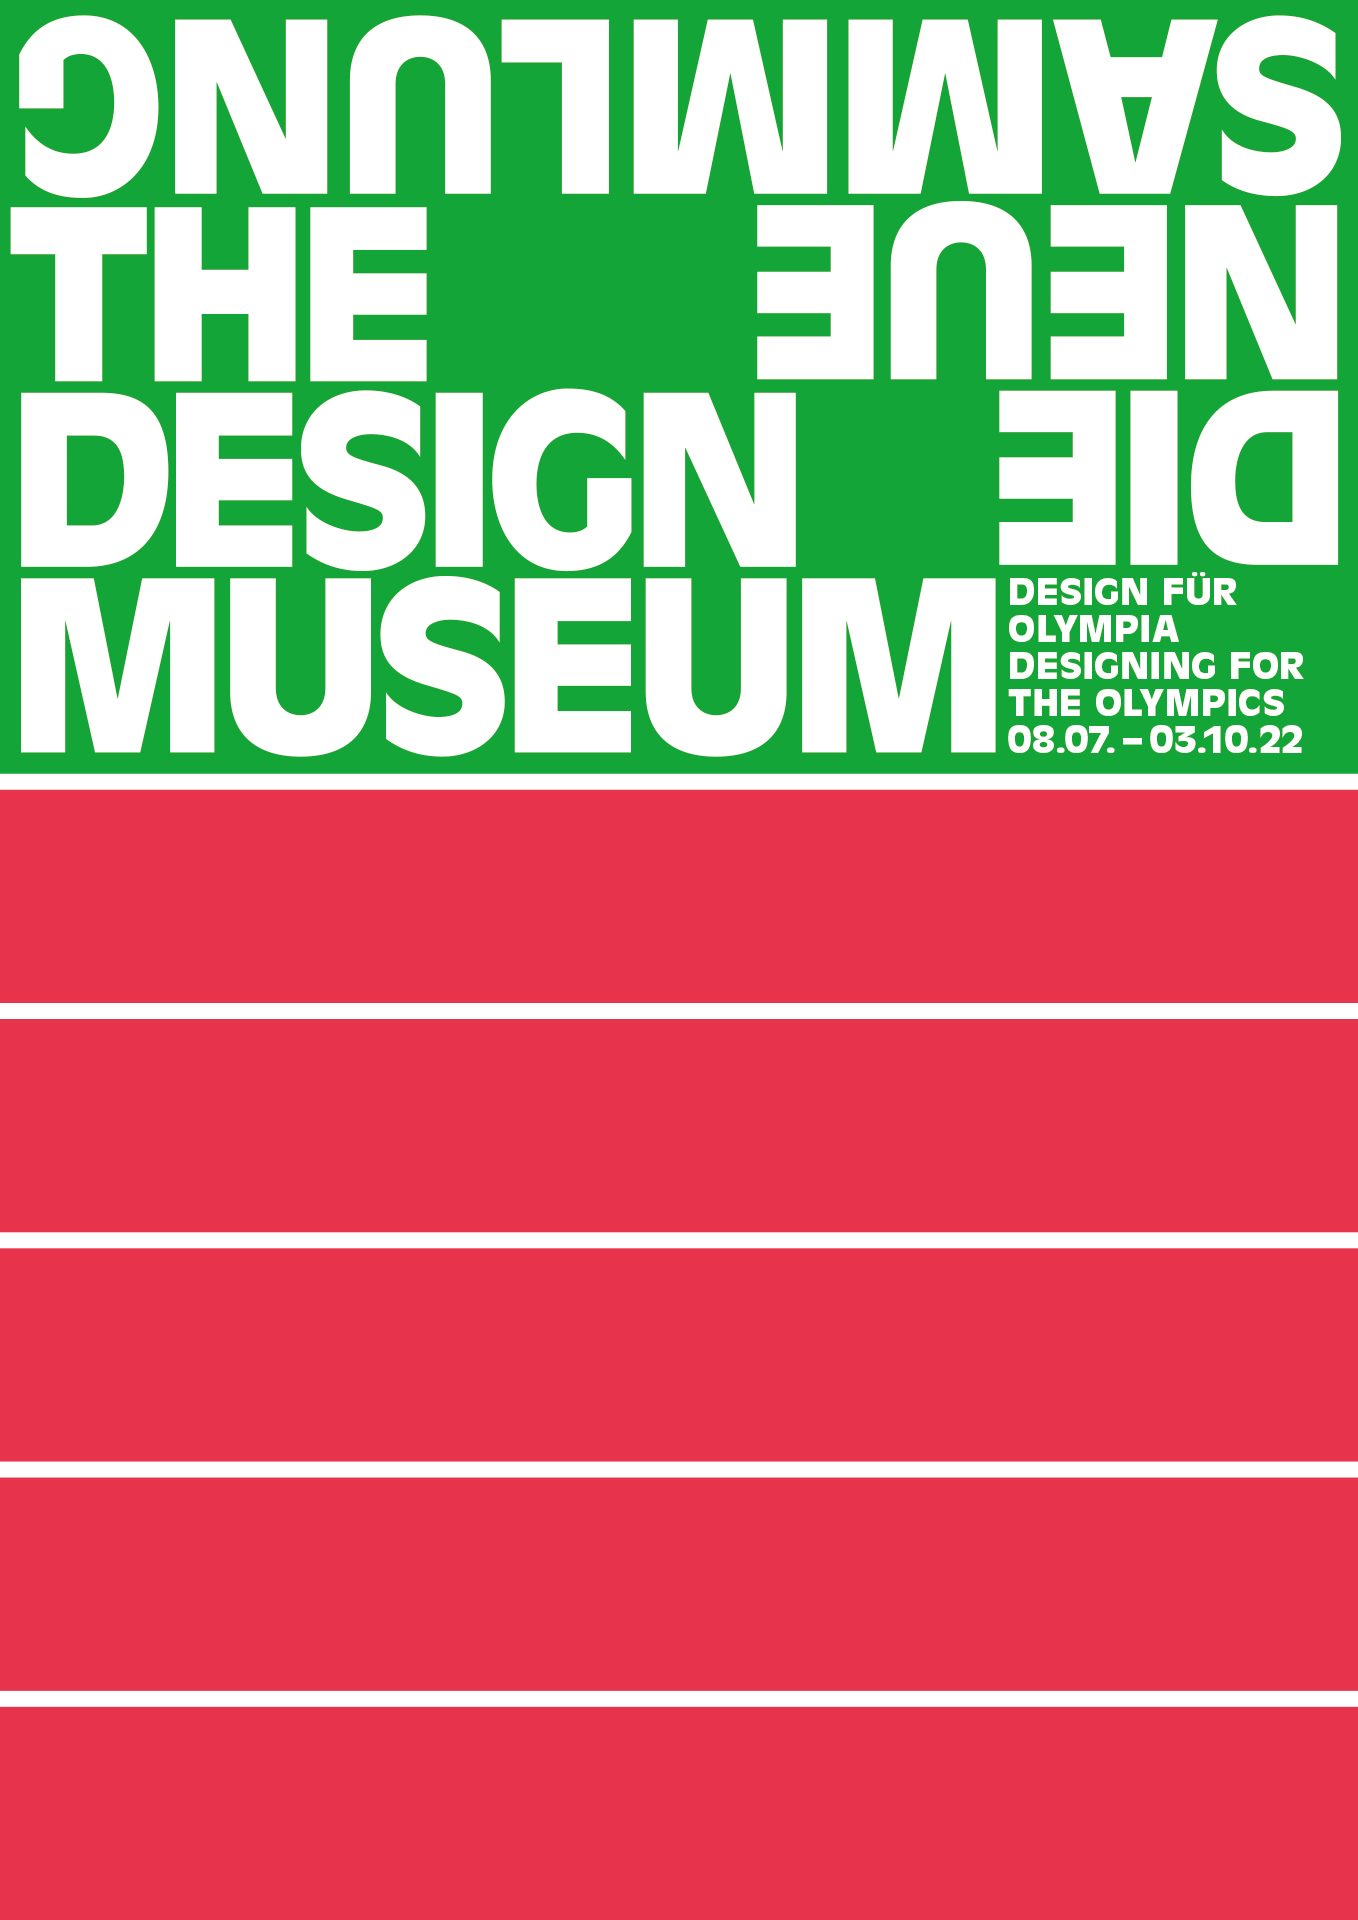 Ausstellungsplakat. Das grüne Logo von Die Neue Sammlung mit Titel und Ausstellungslaufzeit am Rand rechts unten. Darunter fünf rote Balken